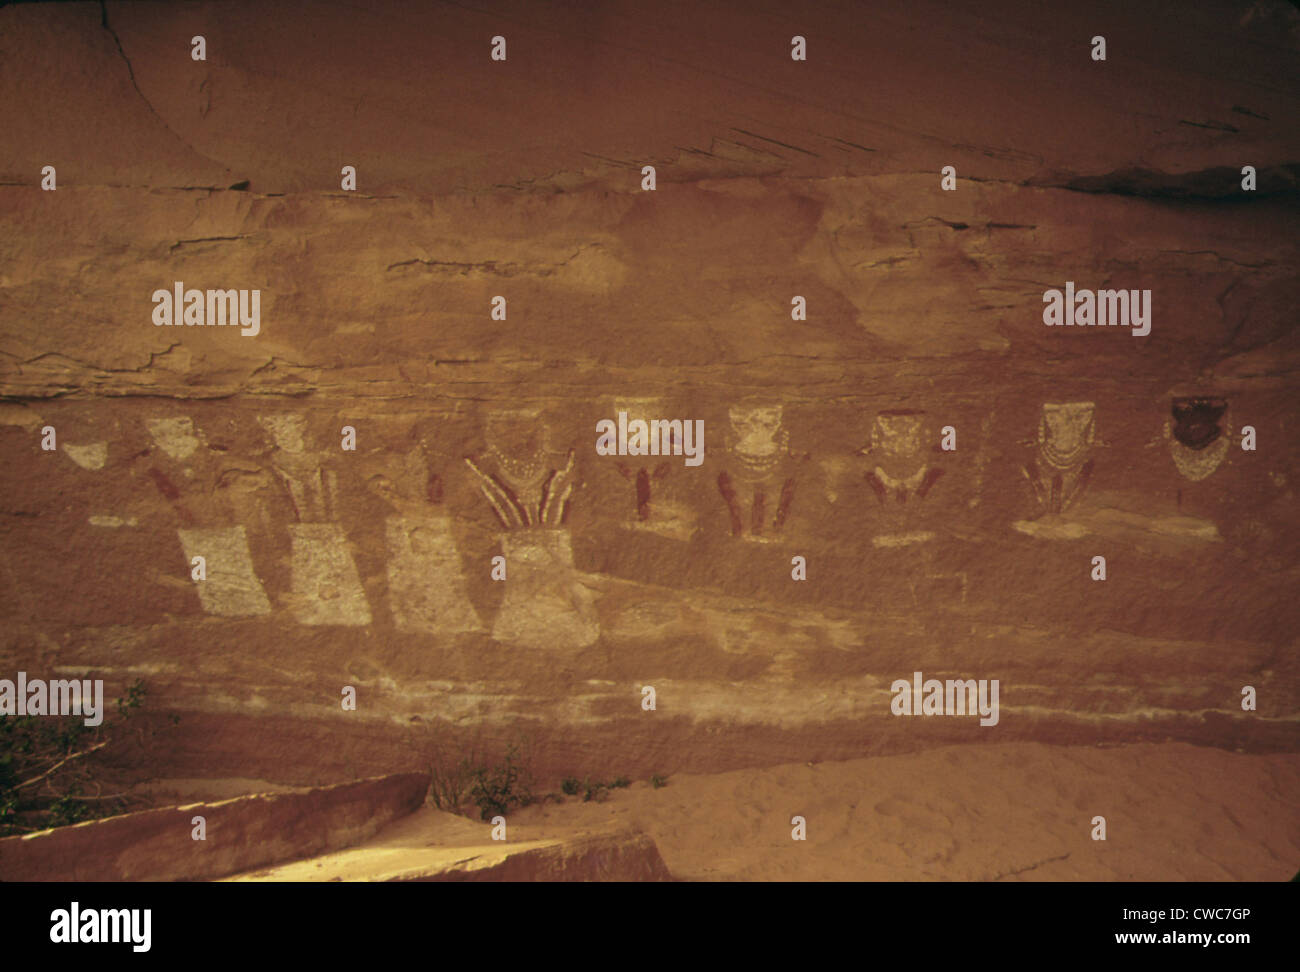 Piktogramme namens der dreizehn Faces in Horse Canyon in Utah. Abbildung 10 die Zahlen vermutlich 1000 Jahre alt werden. Ca. Stockfoto